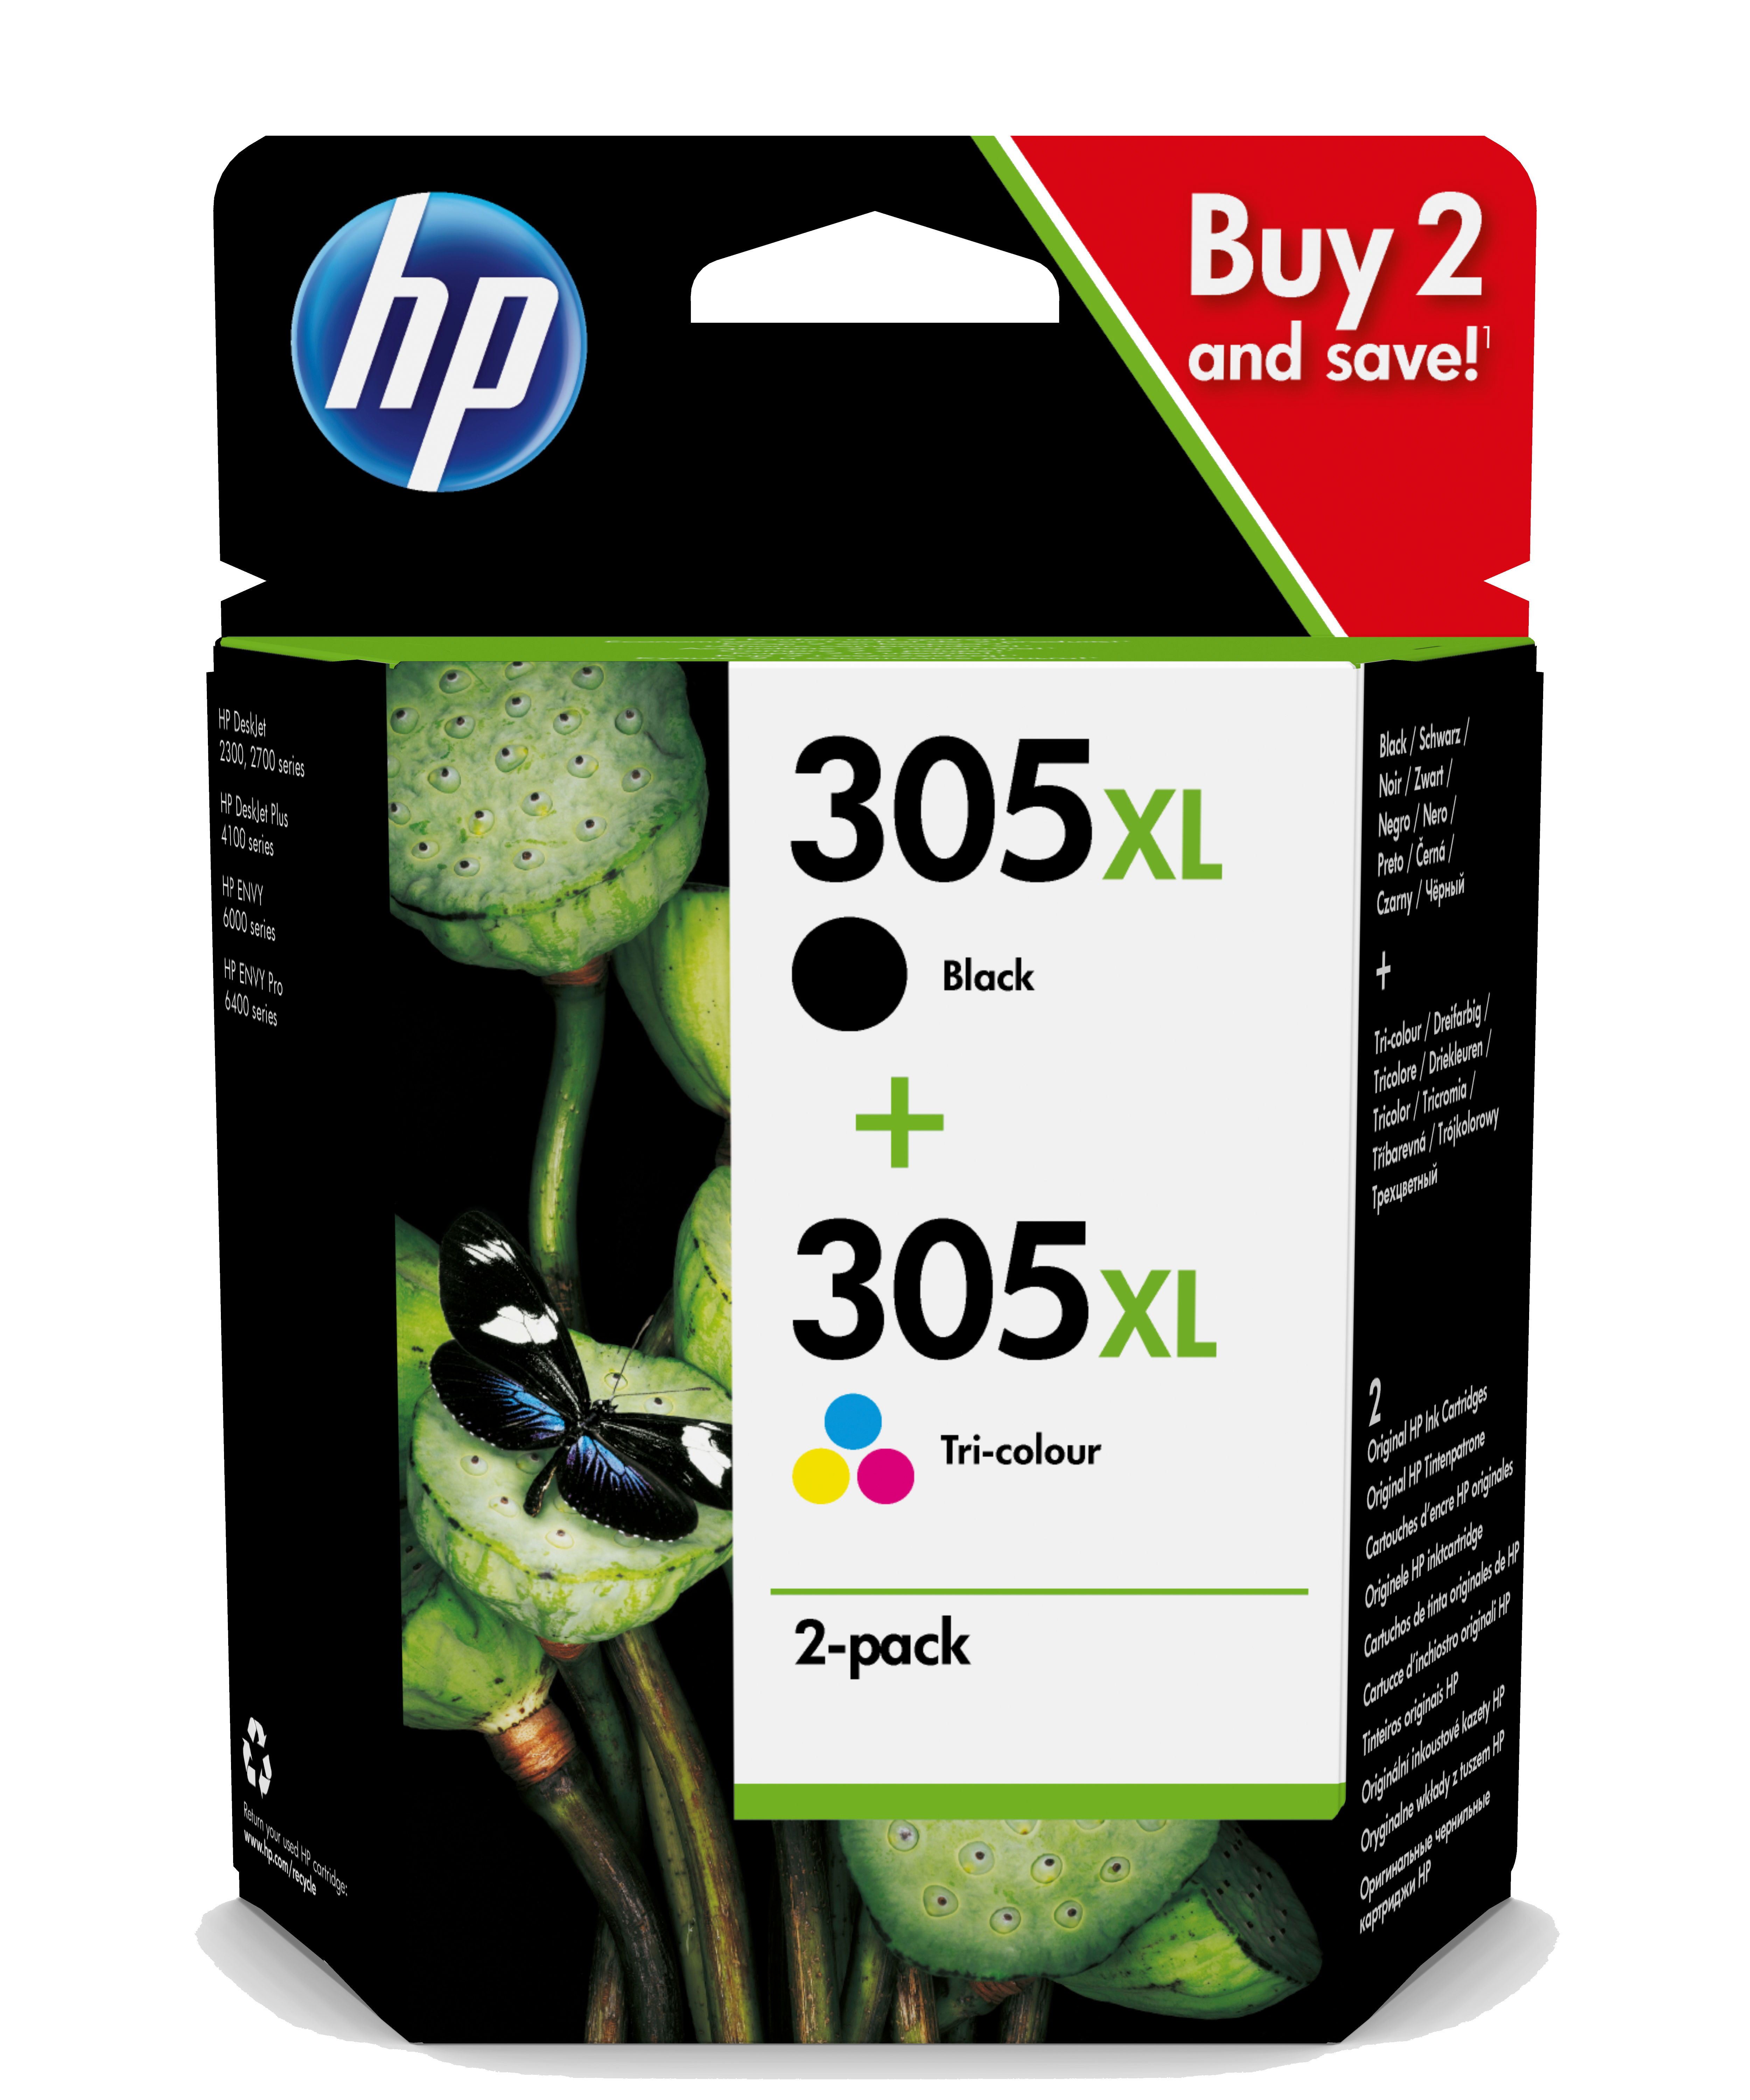 Cartouche HP 305, pack de cartouches noire et couleur